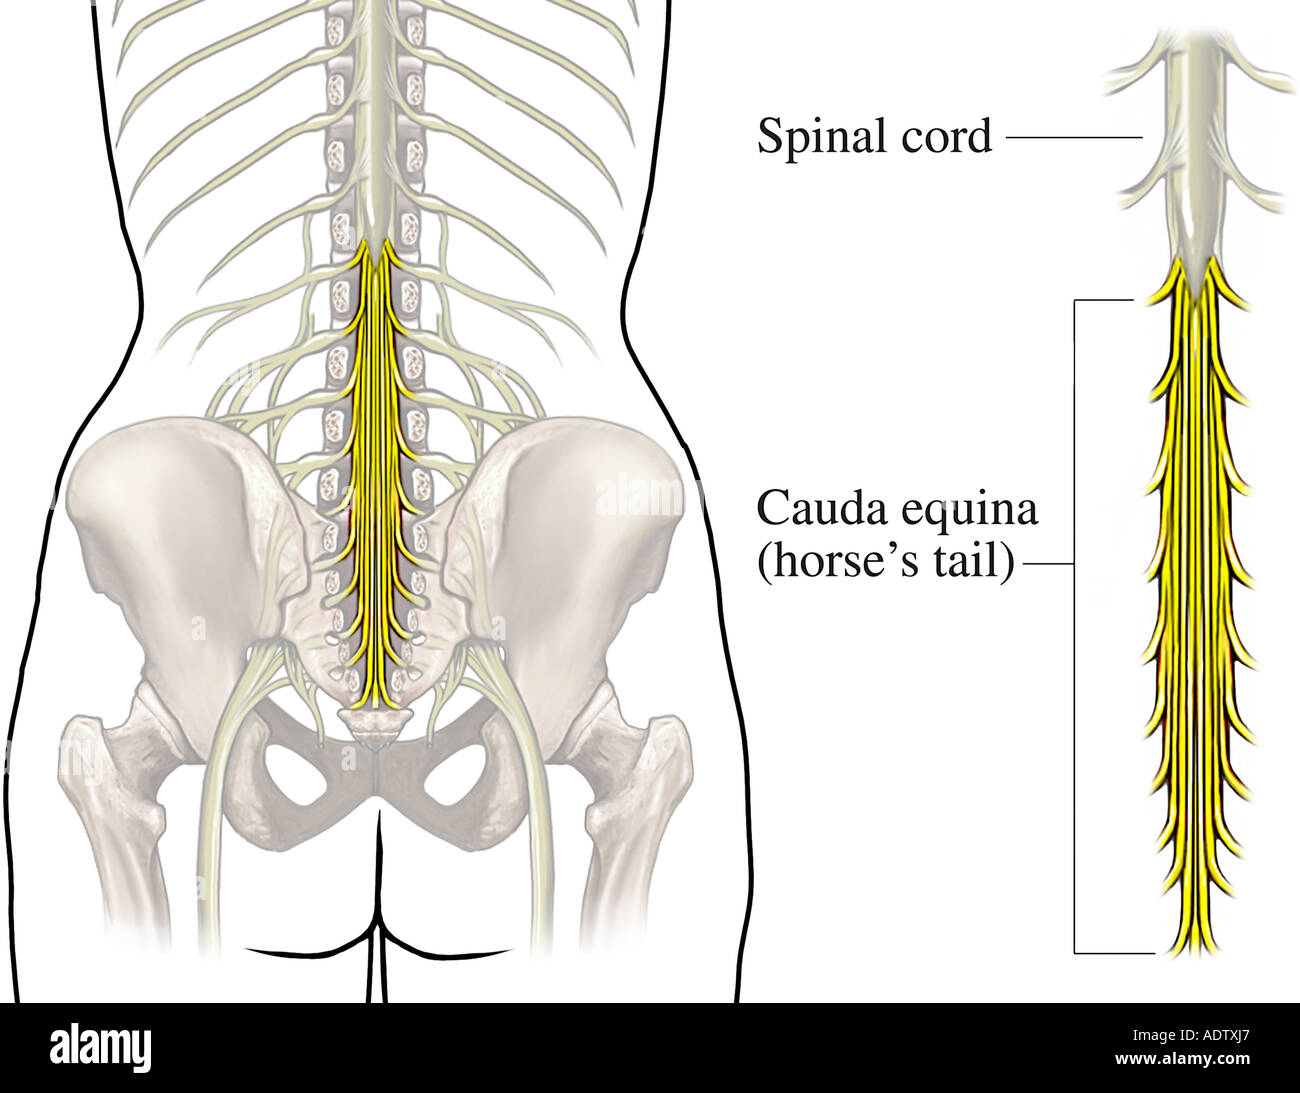 Пояснично крестцовый отдел операция на позвоночнике. Пояснично-крестцовый отдел спинного мозга. Седалищный нерв и конский хвост. Конский хвост кауда эквина. Спинной мозг конский хвост седалищный нерв.